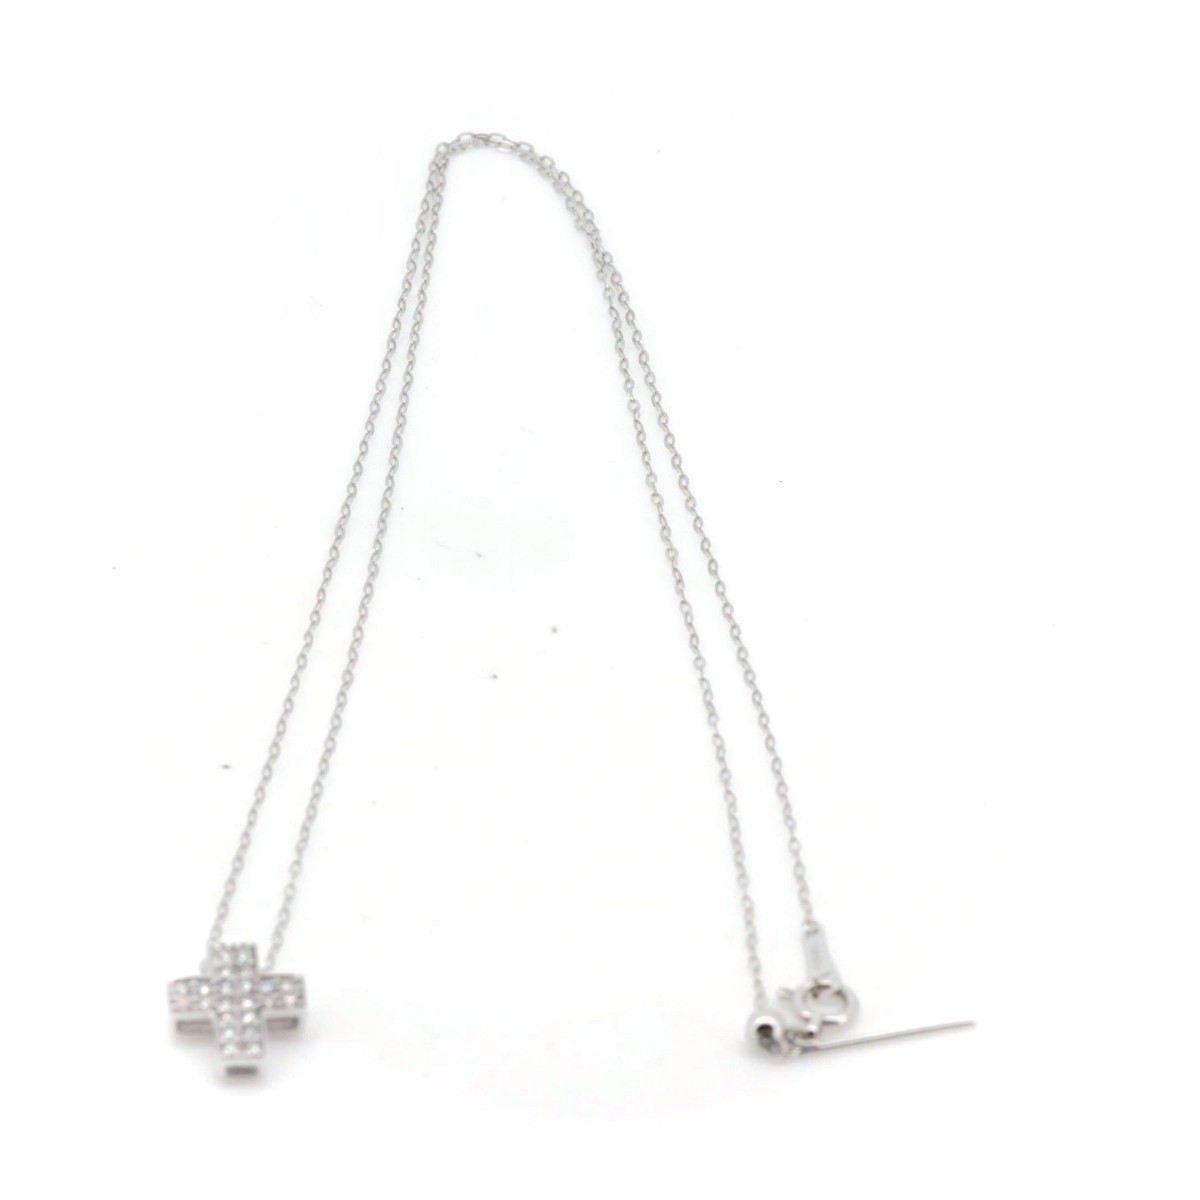 GSTV ダイヤモンド クロスペンダントトップ 0.20ct K18WG(18金 ホワイトゴールド) 社外ネックレス付 質屋出品